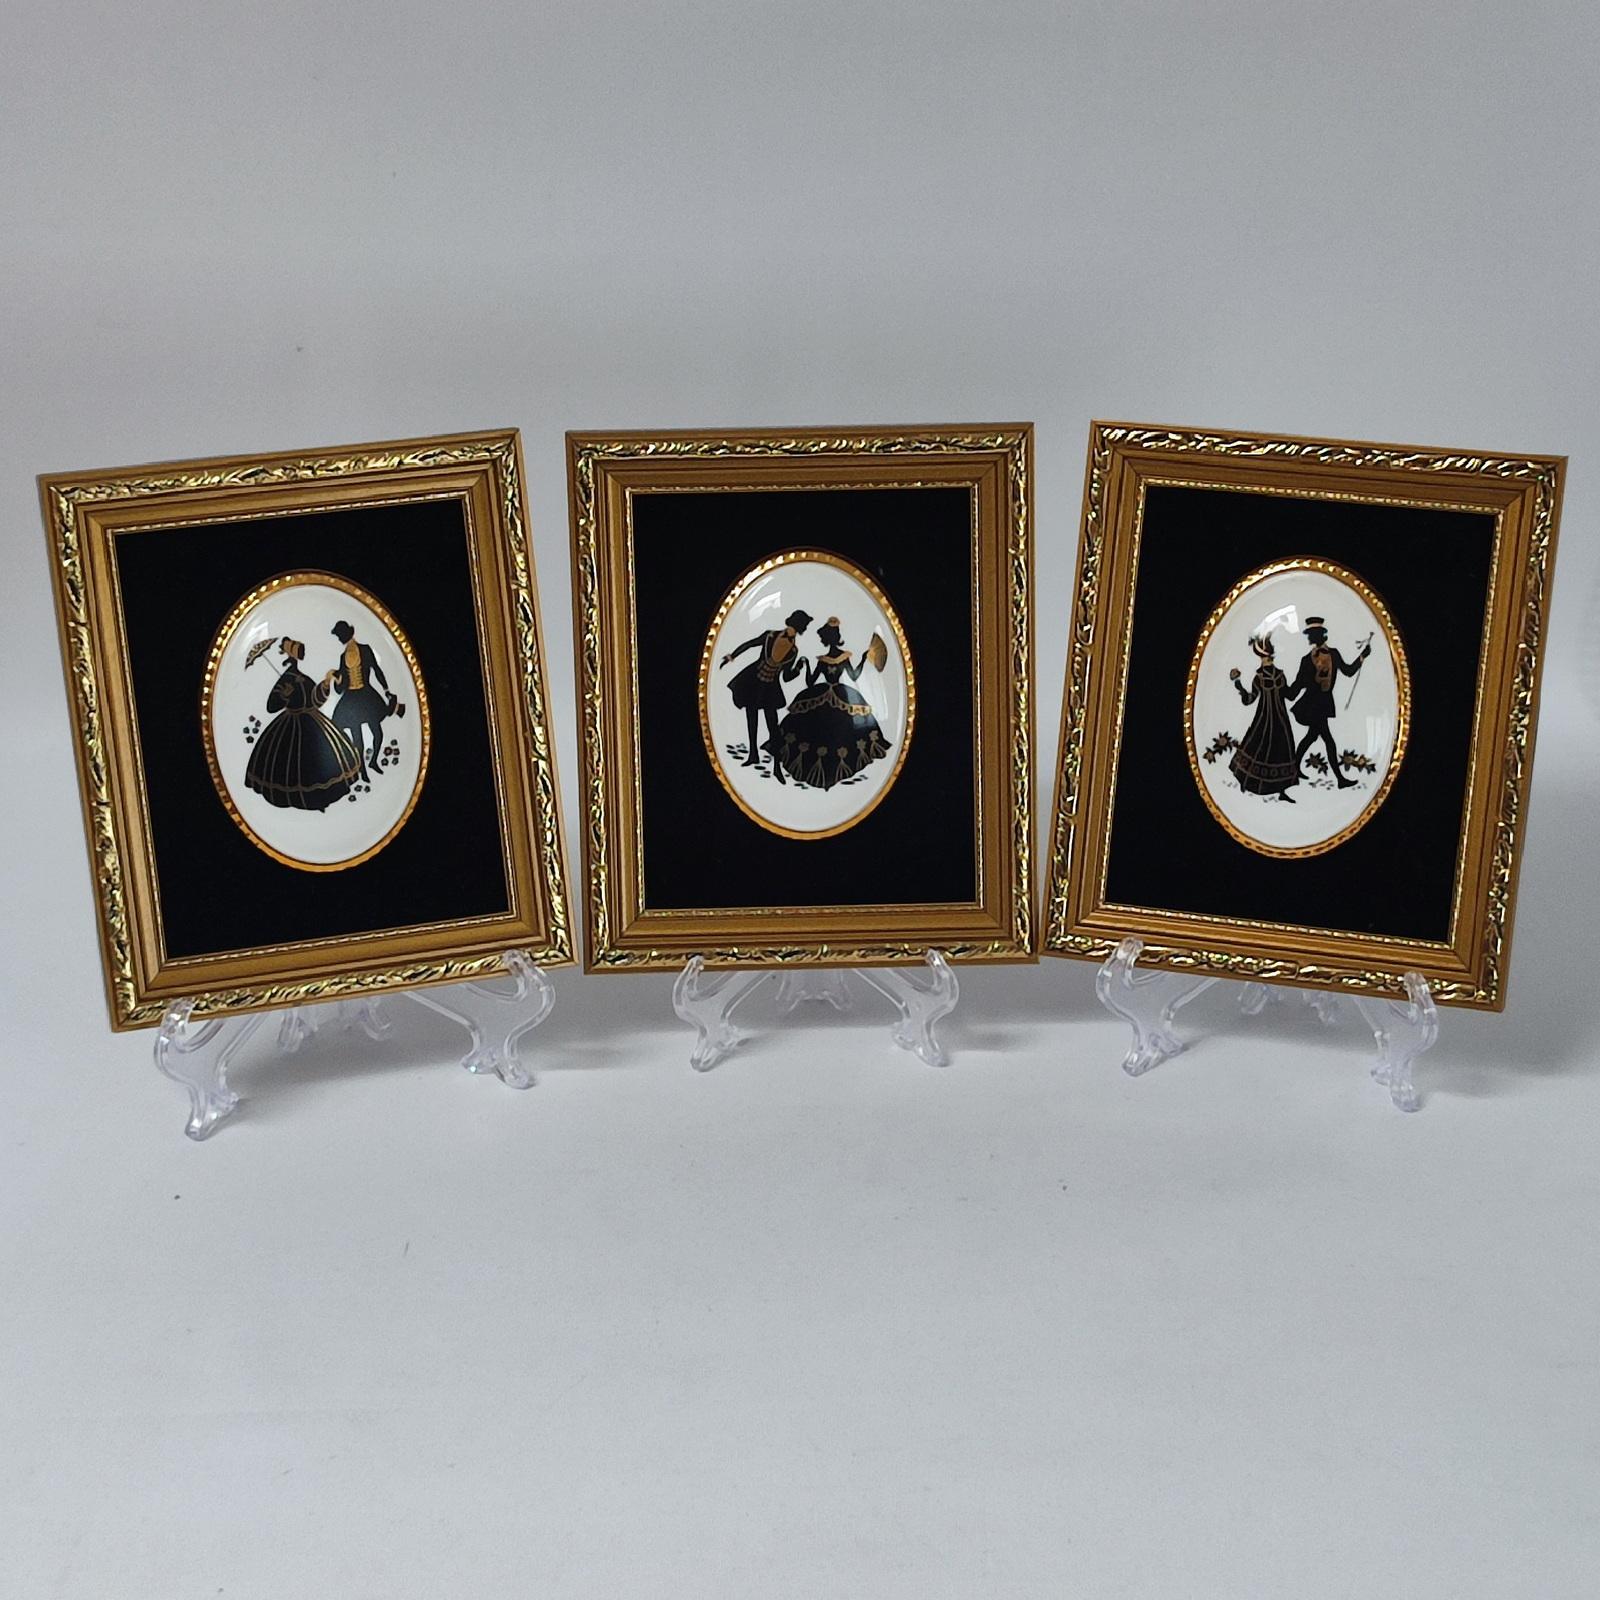 Ensemble de 3 images de silhouettes du Staffordshire encadrées sur des médaillons de porcelaine (noir or), avec fond de velours noir.
Ces magnifiques silhouettes d'art mural en Diptych Fine Arts ajoutent une touche de romantisme à votre intérieur.